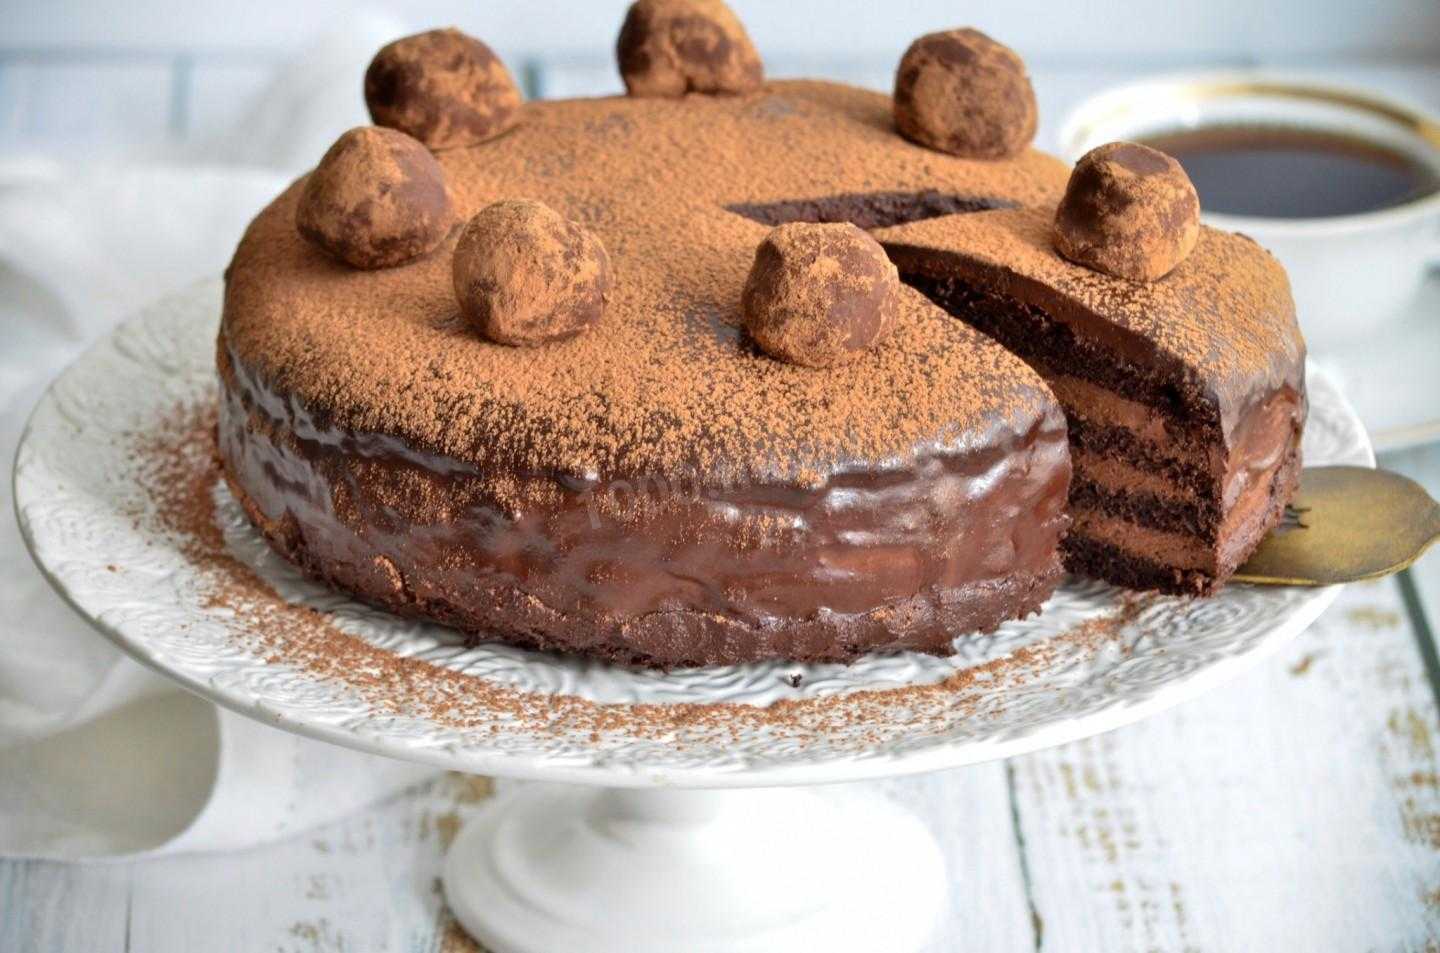 Торт «малиново-шоколадный трюфель» - домашняя выпечка - 21 декабря - 43588699506 - медиаплатформа миртесен